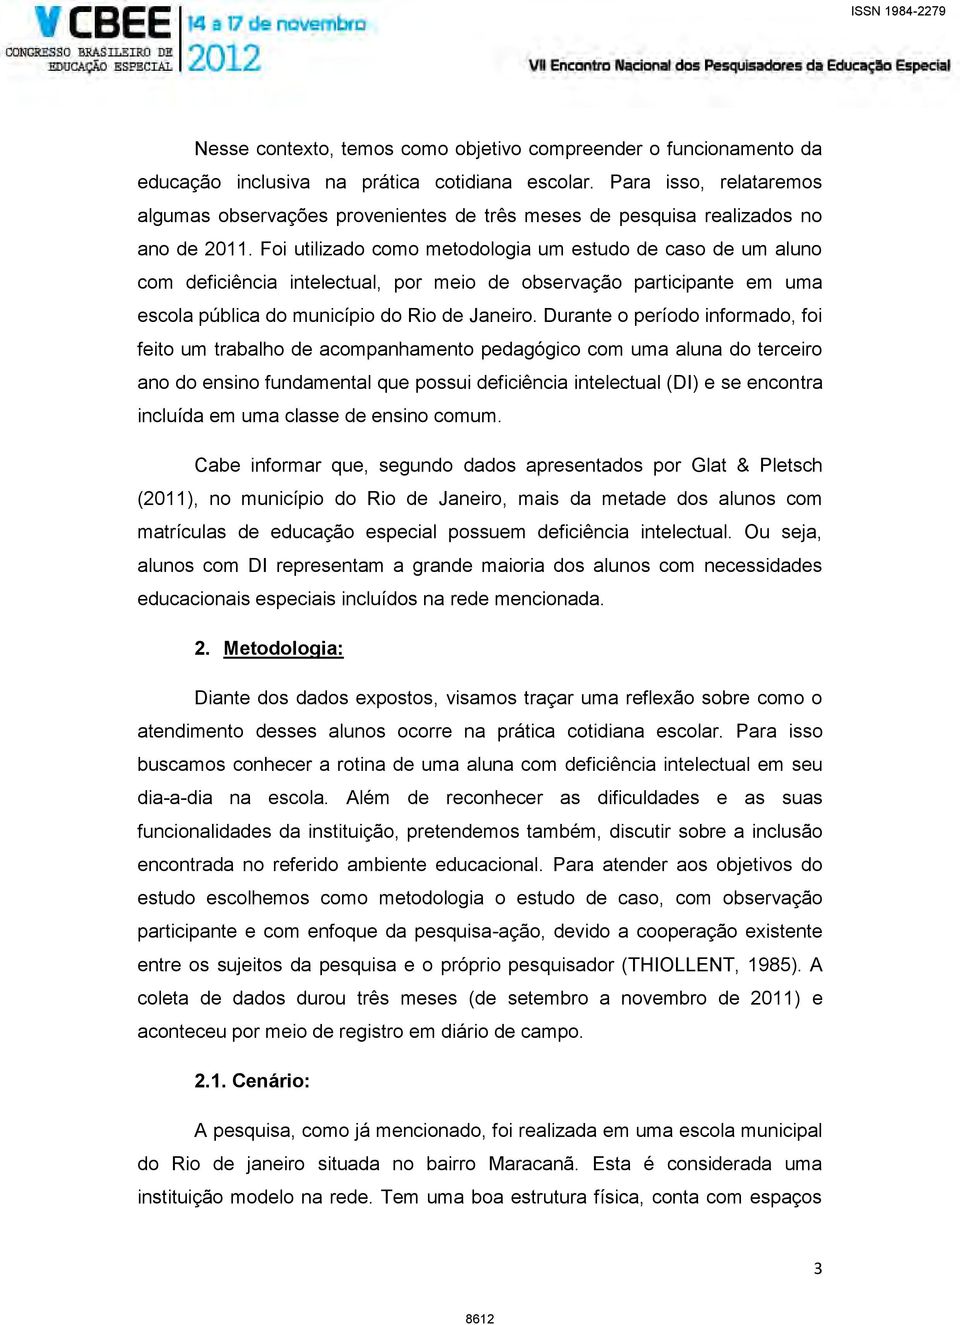 Foi utilizado como metodologia um estudo de caso de um aluno com deficiência intelectual, por meio de observação participante em uma escola pública do município do Rio de Janeiro.